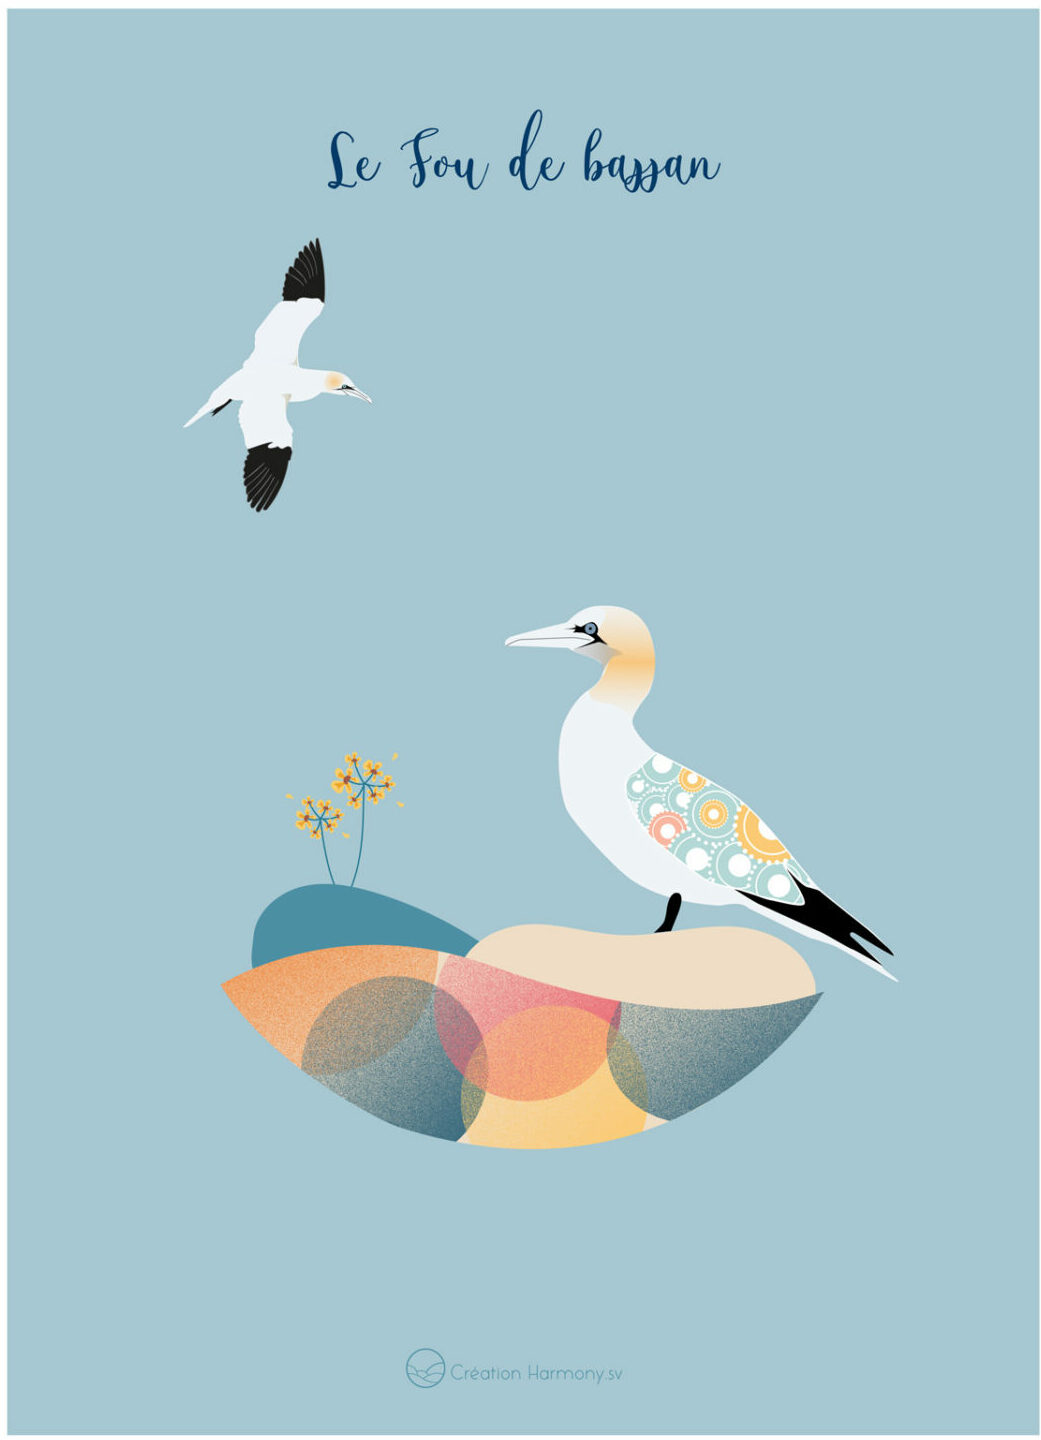 affiche illustration mer animal oiseau fou de bassan deco design leonie et france eshop de createurs francais maison